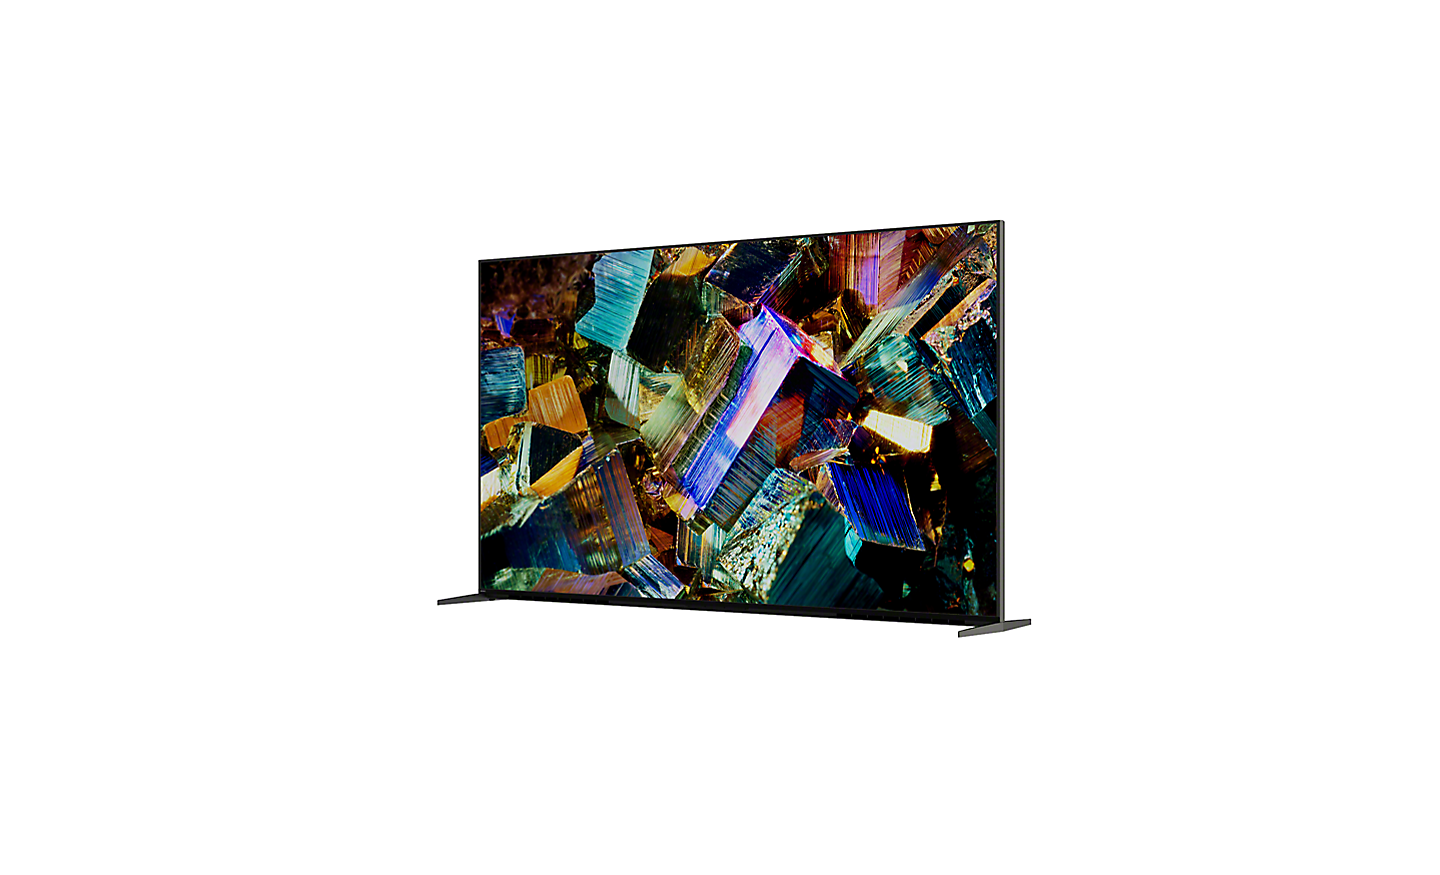 عارض 360 منزلق للسلسلة Z9K يعرض منظر 360 درجة للتلفزيون ولقطة شاشة لبلورات ملونة